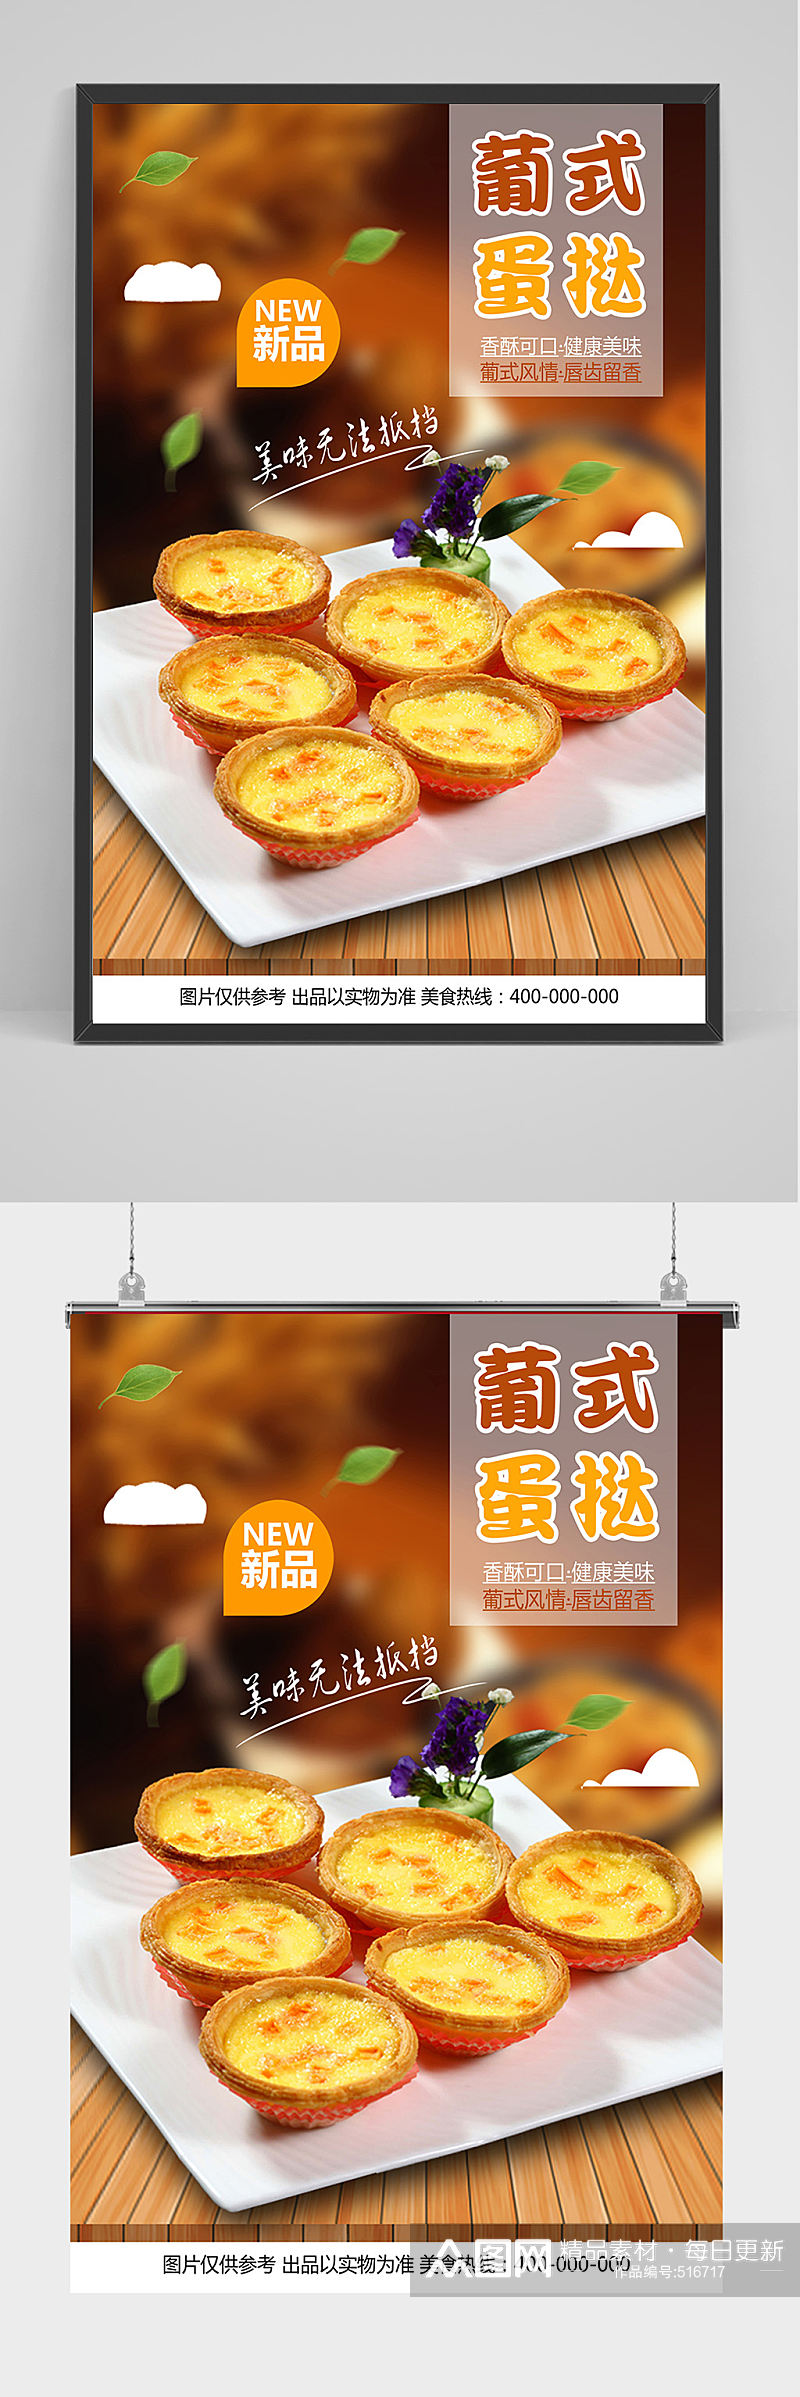 香酥可口蛋挞海报设计素材